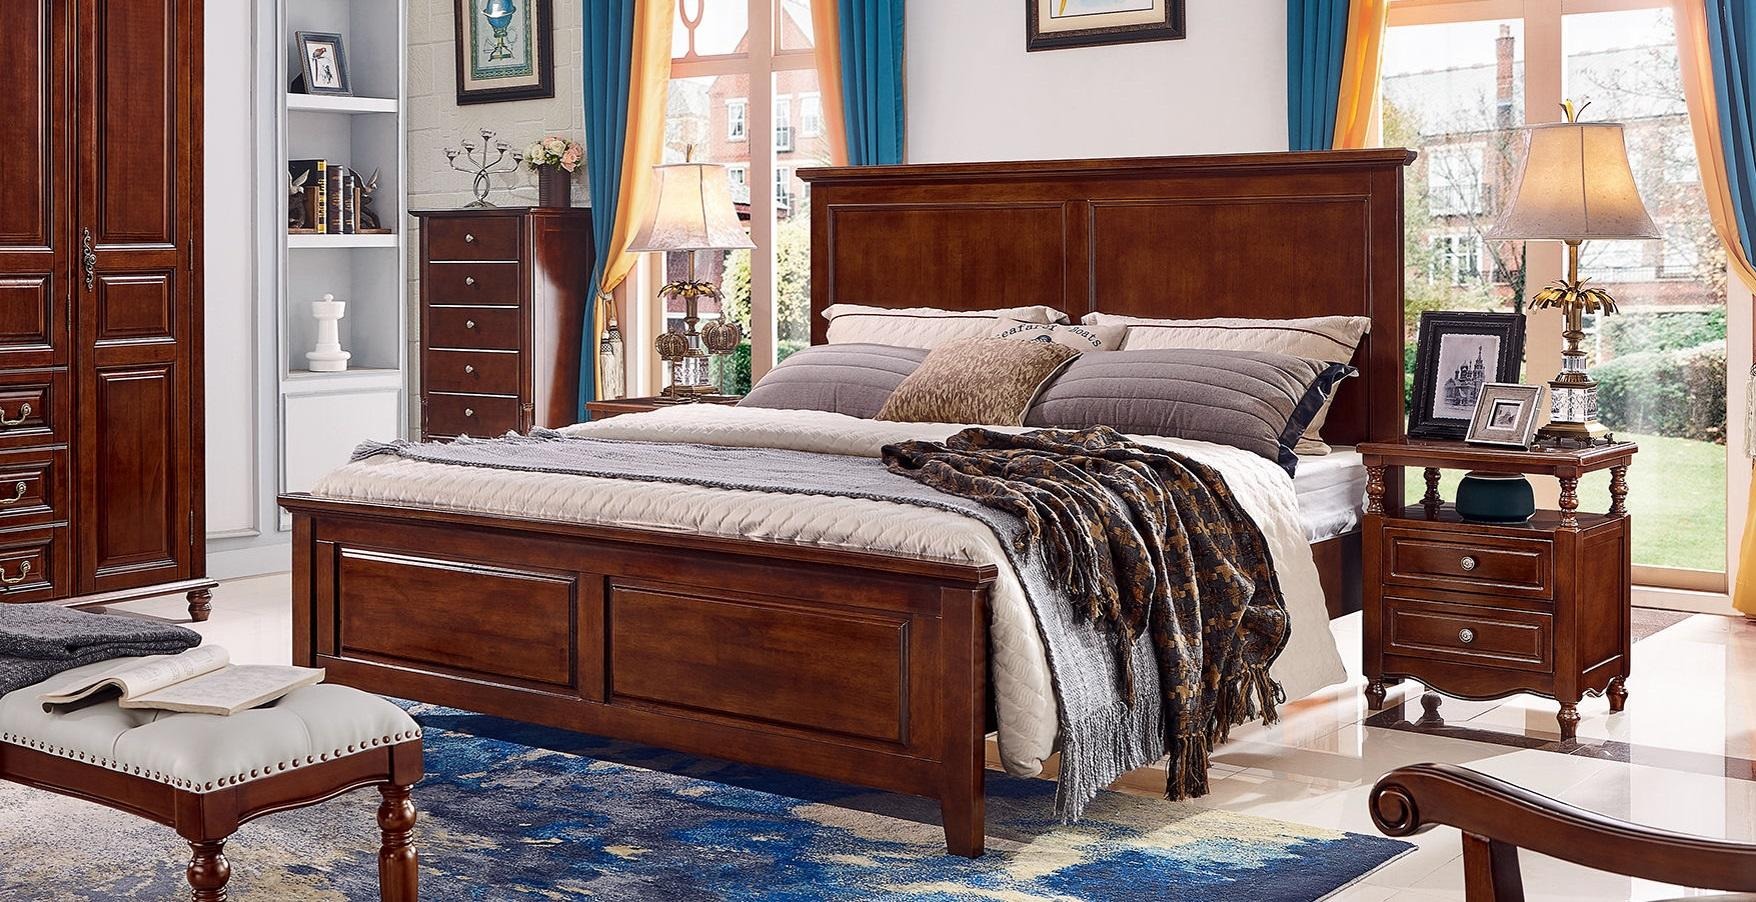 Luxus Bett Holz Bettrahmen Doppel Bettgestell Betten Doppelbetten Möbel